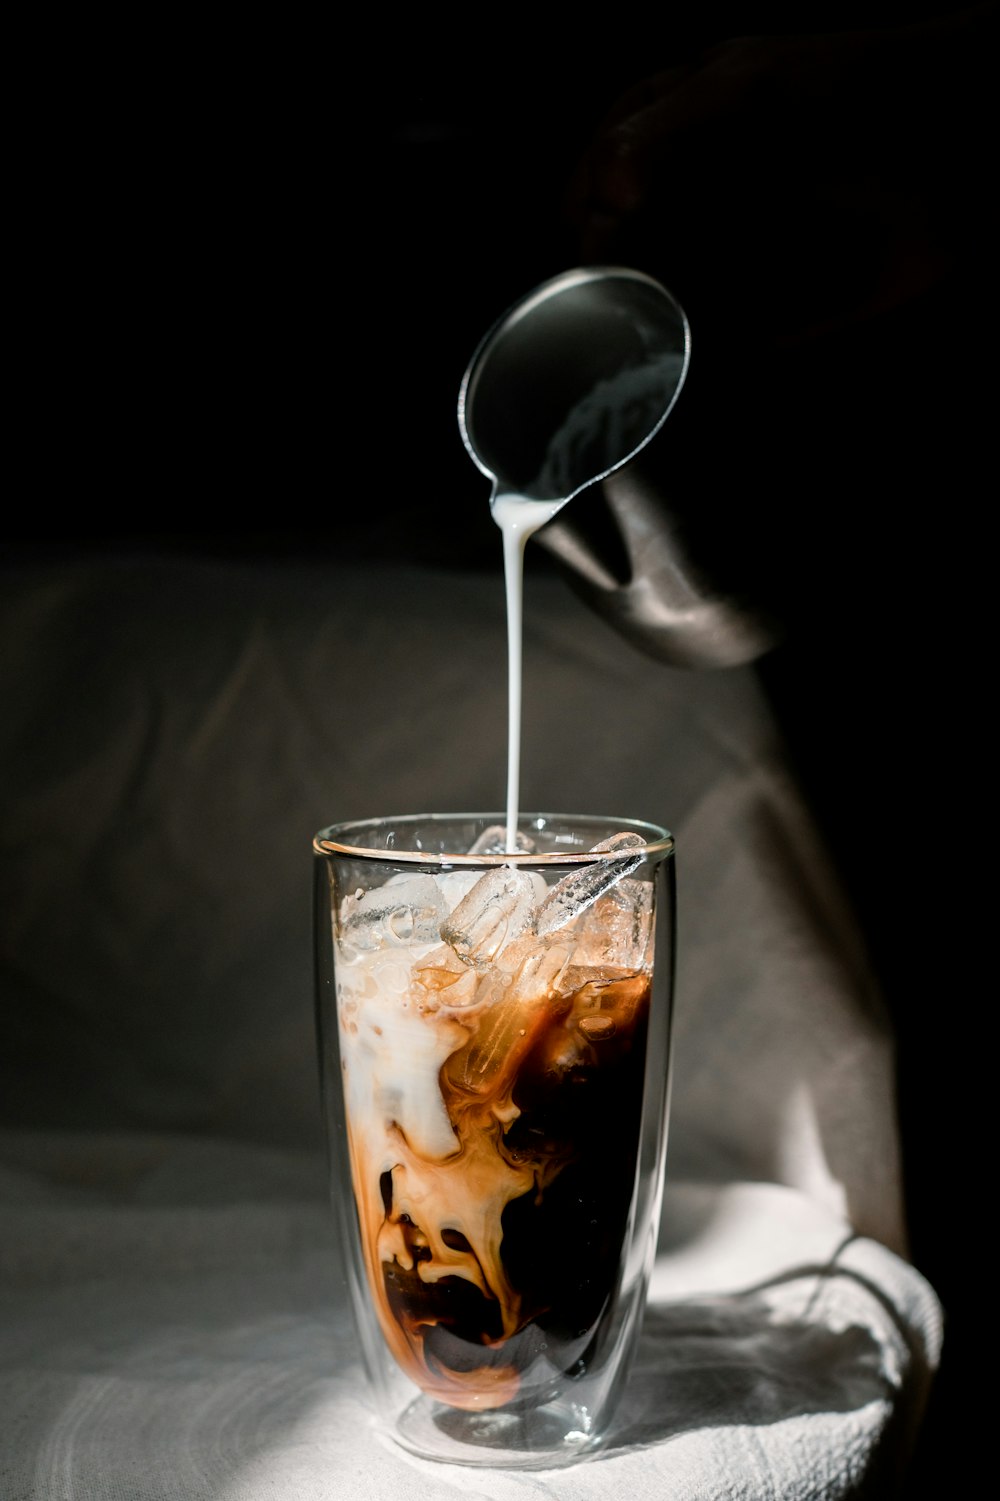 hielo en un vaso transparente con cuchara